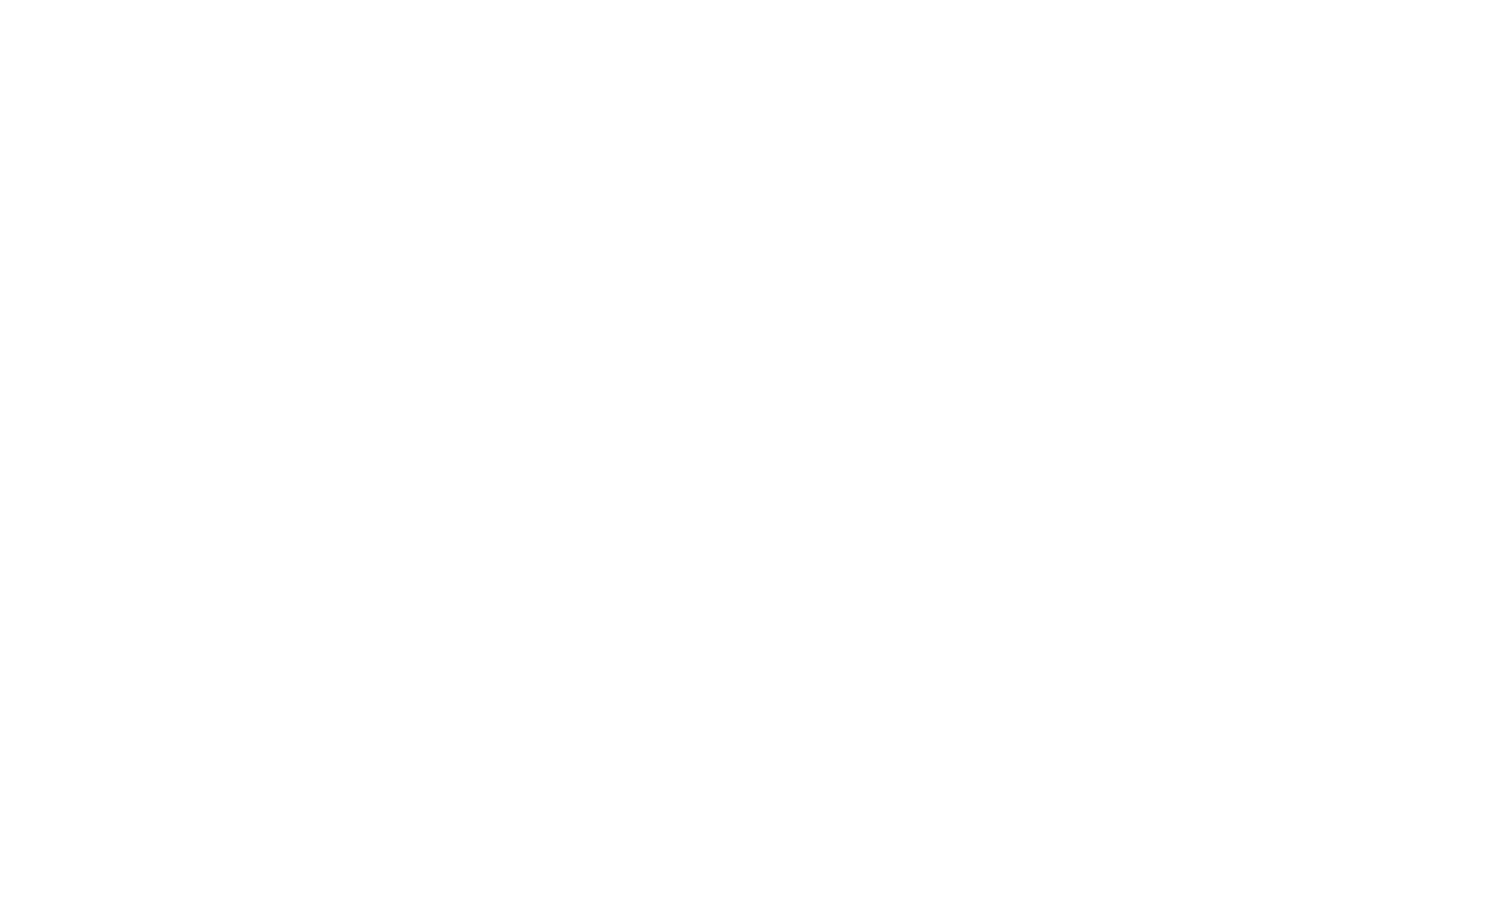 Captain Melville